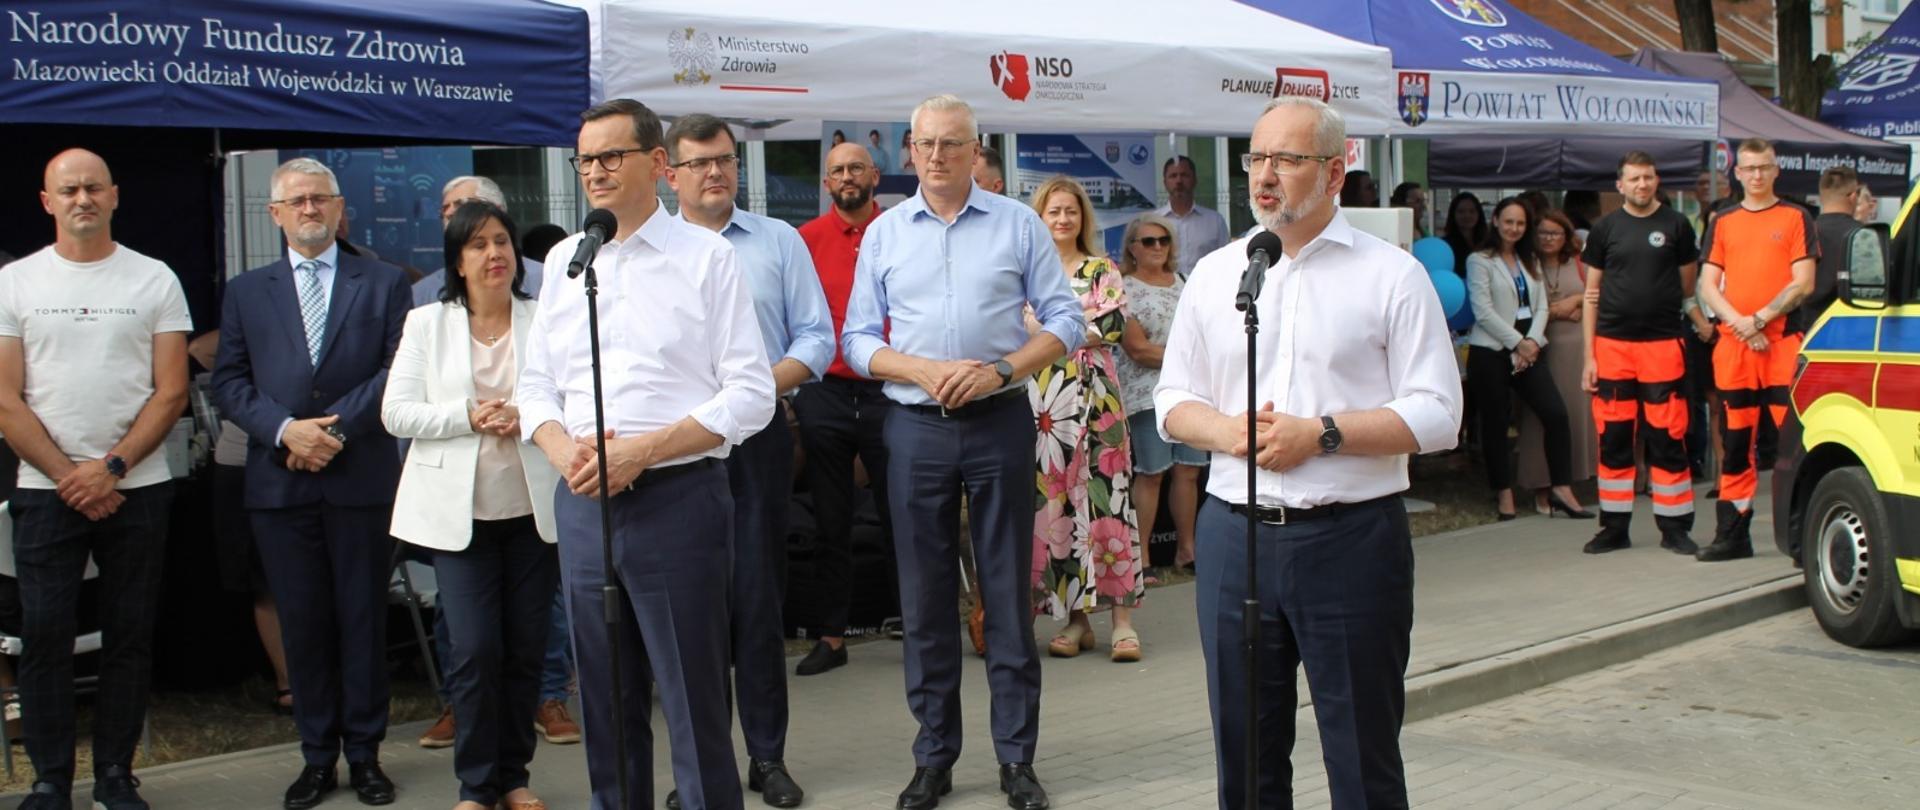 Zdjęcie premiera Mateusza Morawieckiego i ministra zdrowia Adama Niedzielskiego podczas konferencji w Wołominie